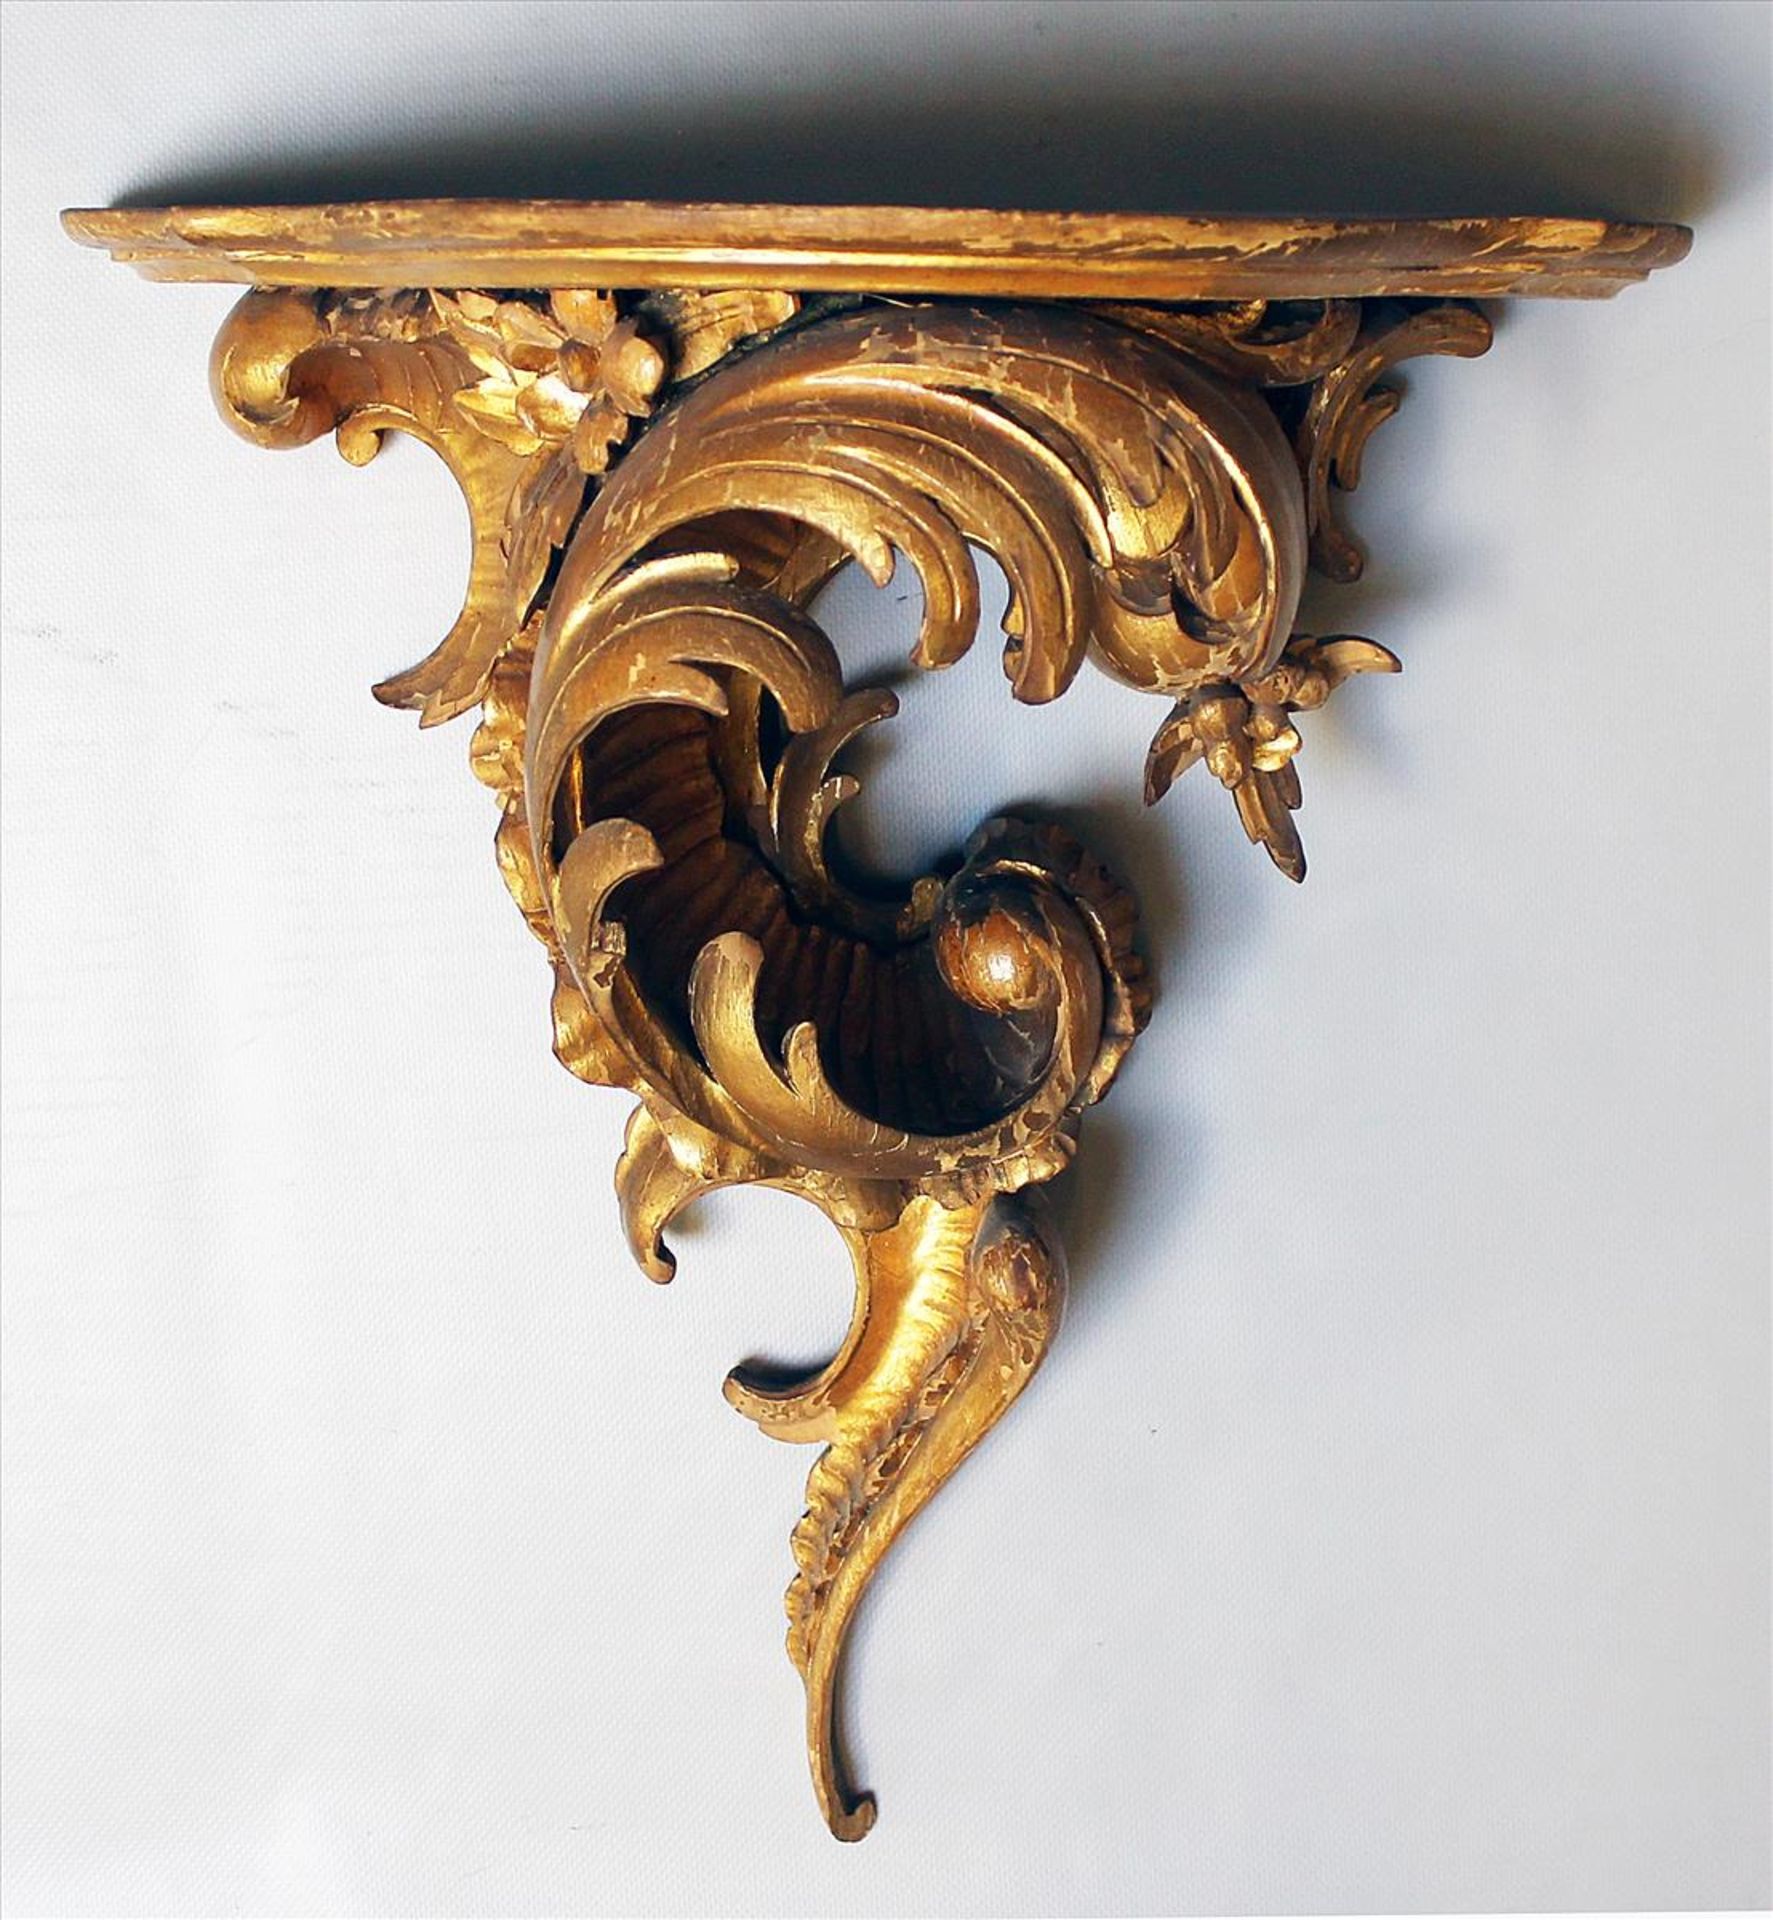 Konsole im Rokoko-Stil.Holz, geschnitzt und vergoldet. Best. Um 1900. 45x 41x 25 cm.